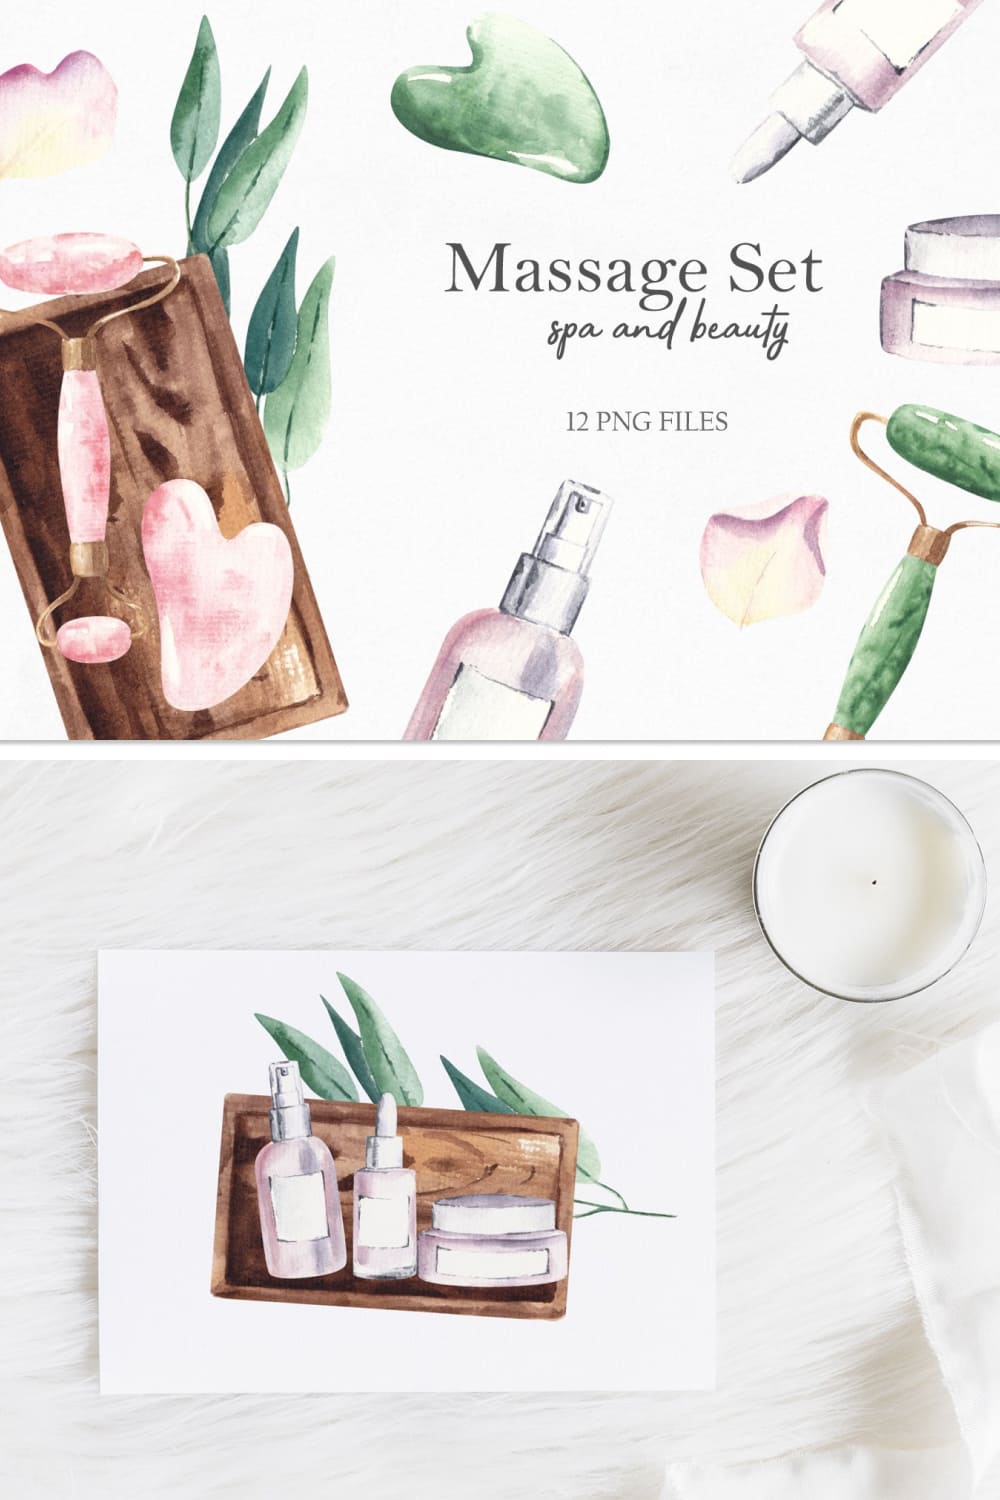 Watercolor massage set - pinterest image preview.